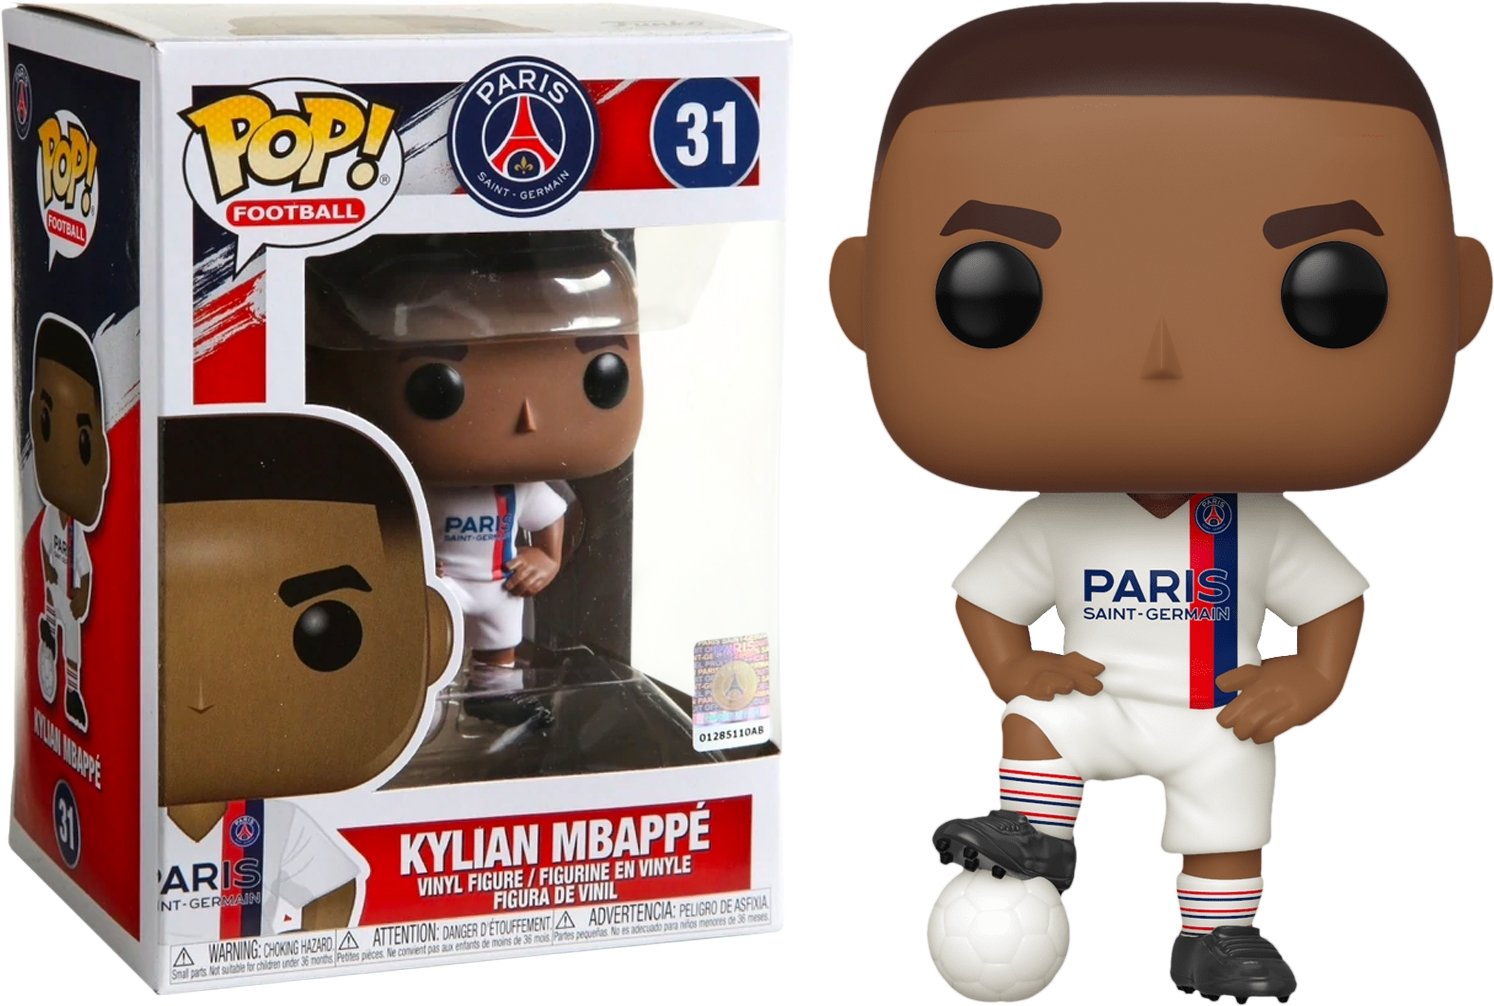 Football (Soccer) - Kylian Mbappé Paris Saint-Germain Pop